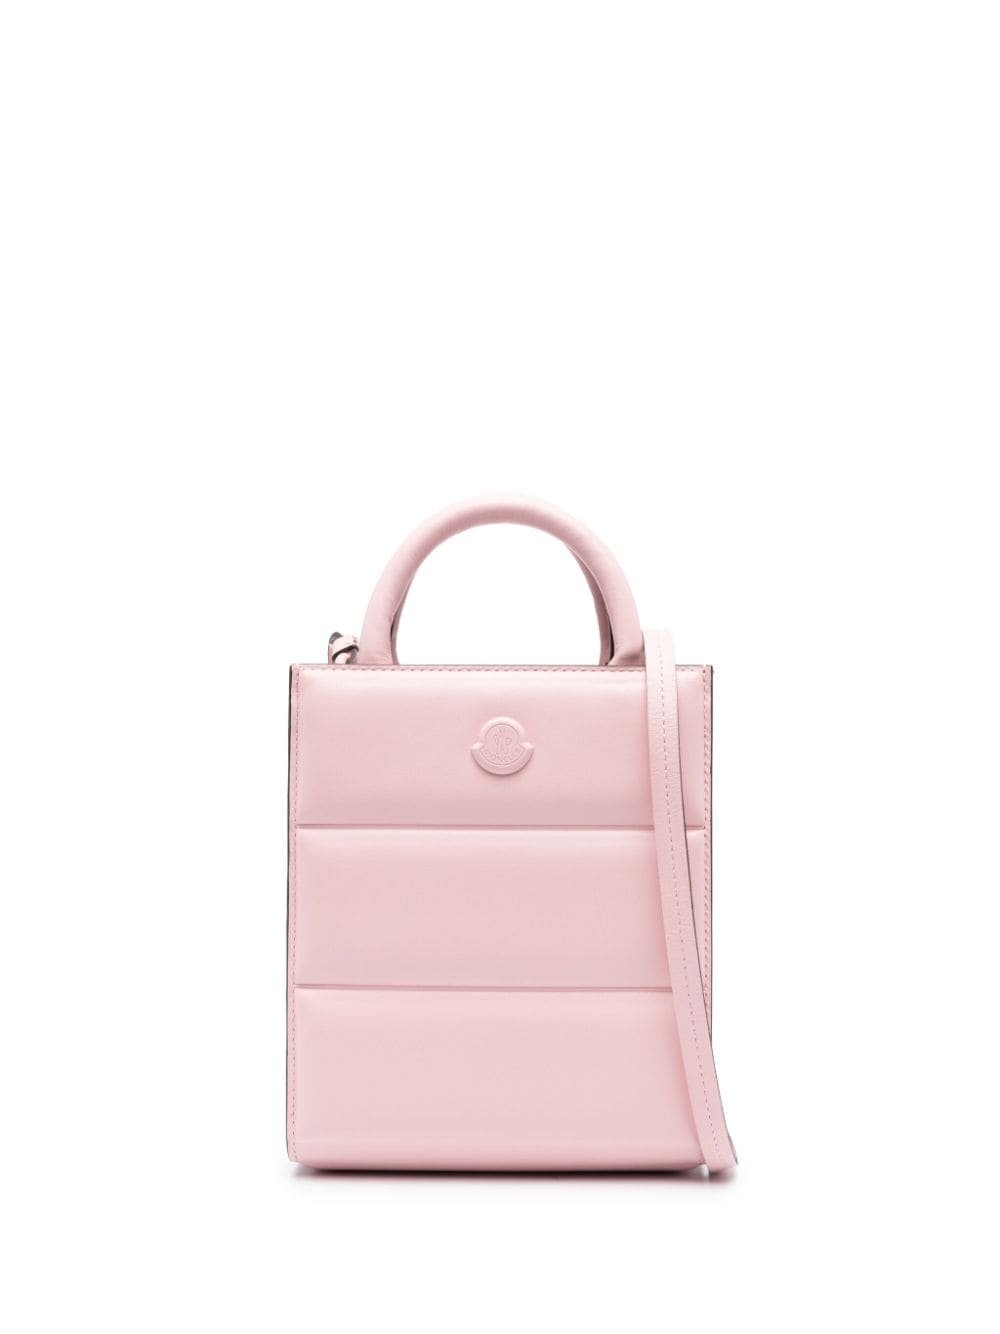 Moncler Doudoune leather mini bag - Pink von Moncler